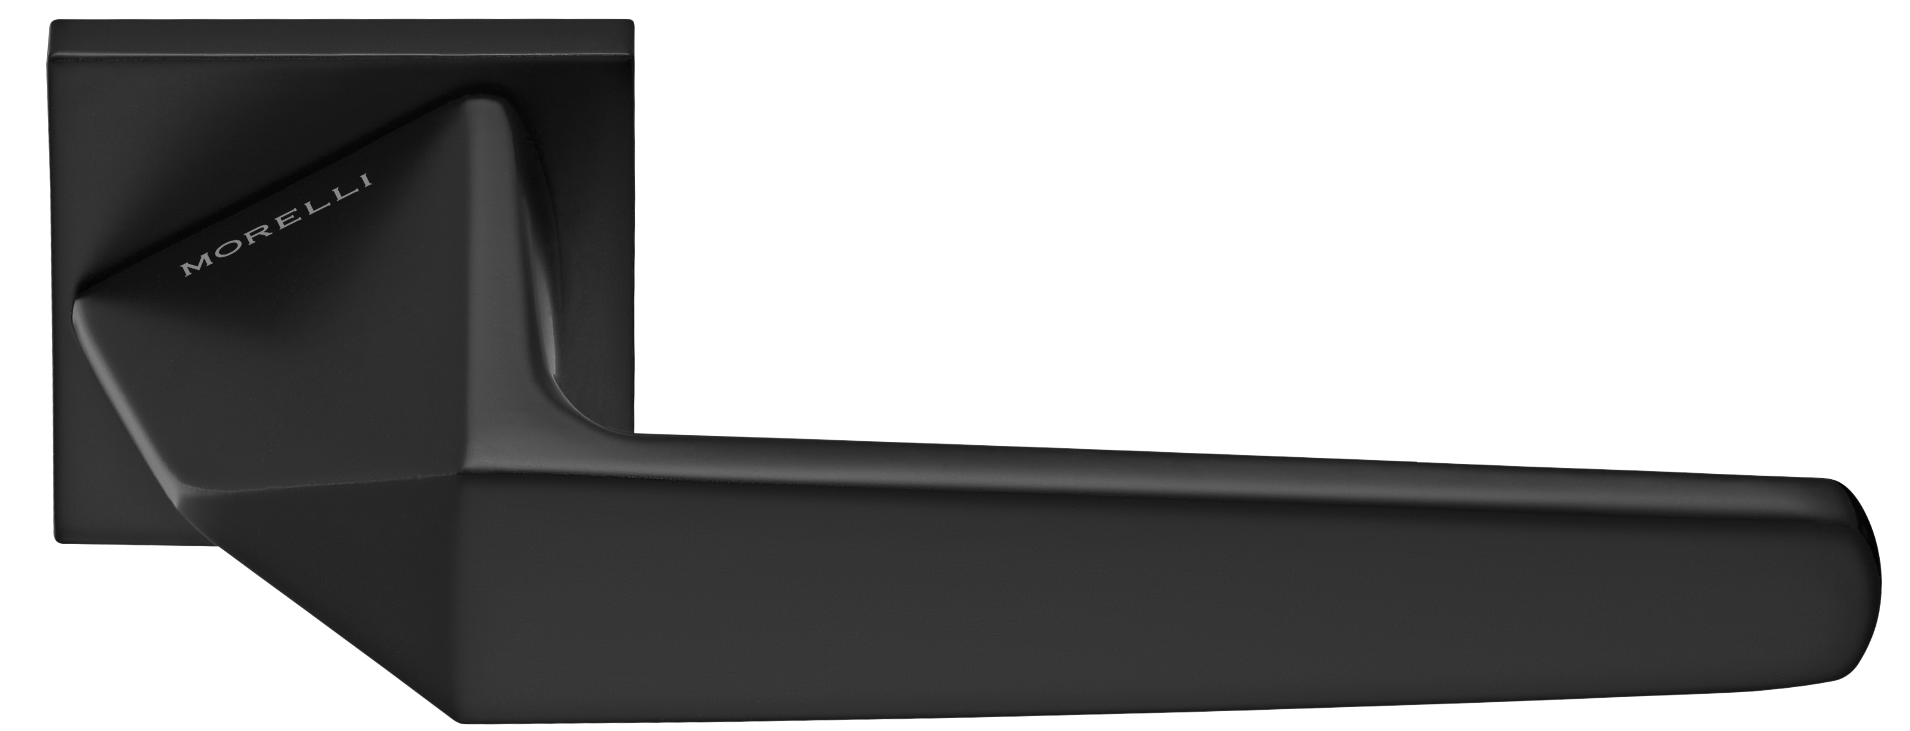 SOUK ручка дверная на квадратной розетке 6 мм, MH-55-S6 BL, цвет - черный фото купить Калининград